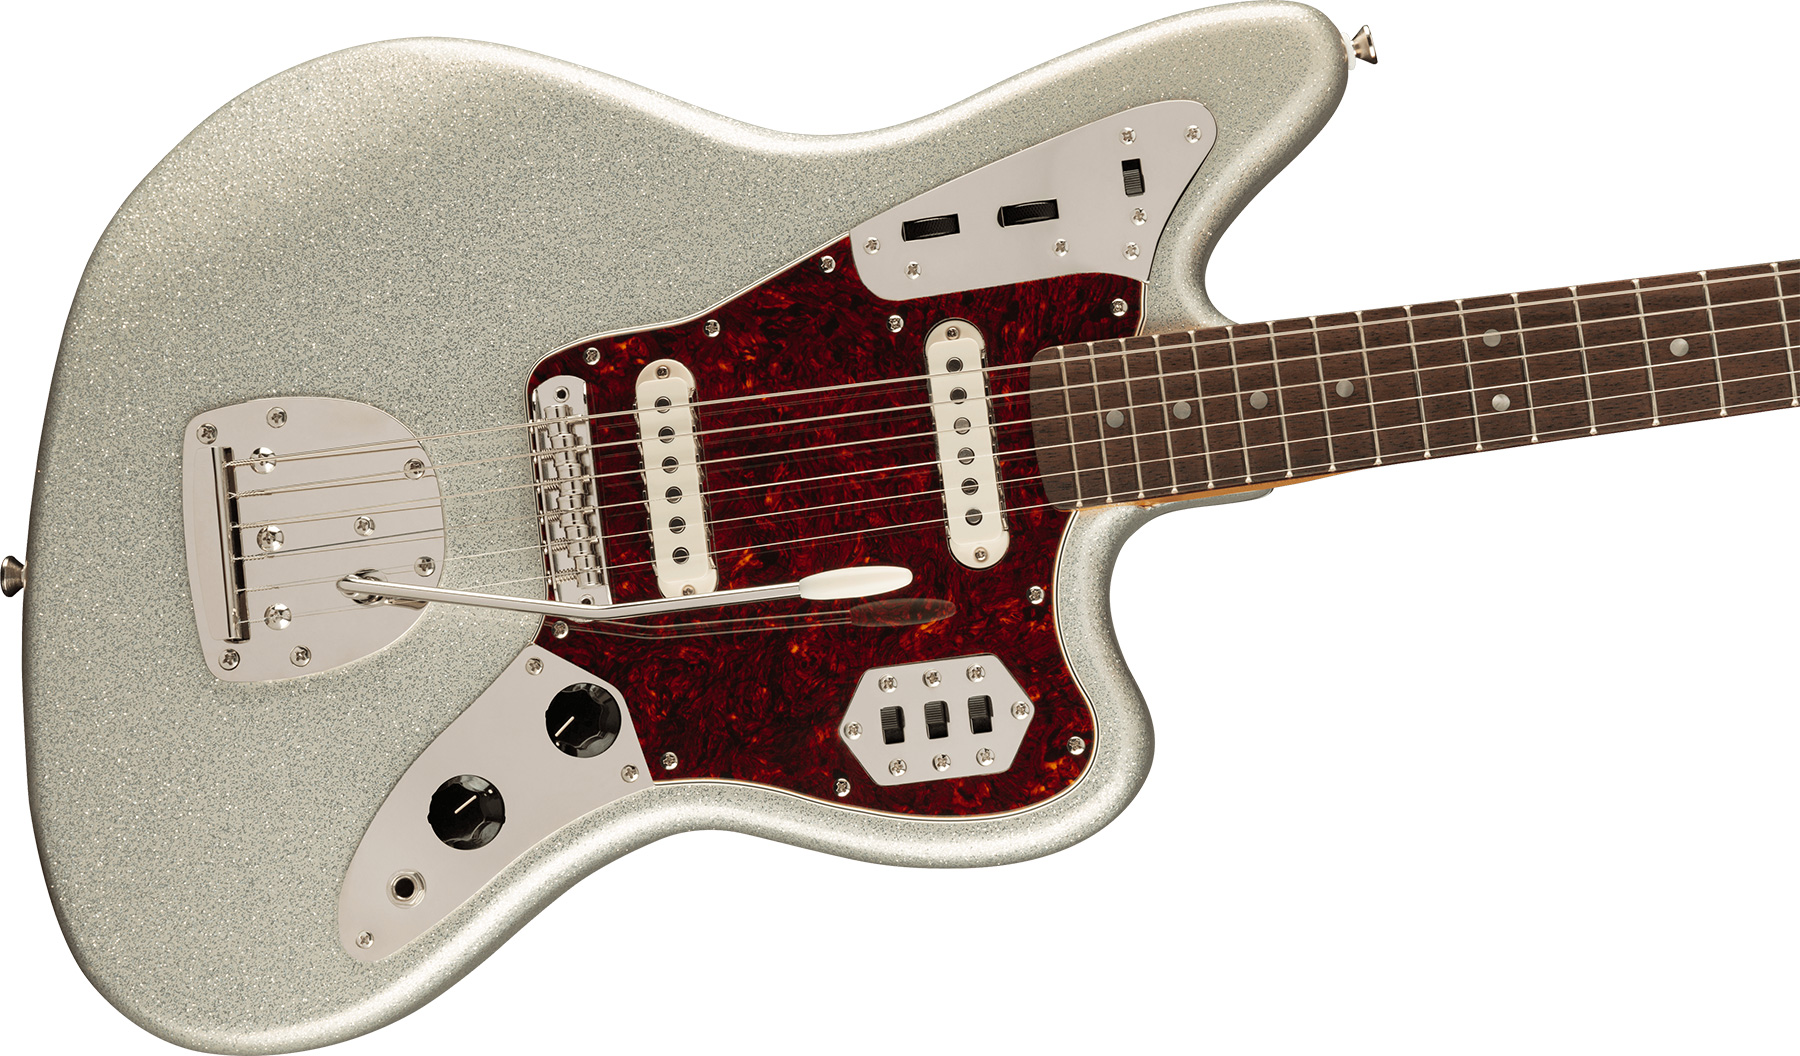 Squier Jaguar 60s Classic Vibe Fsr Ltd 2s Trem Lau - Silver Sparkle Matching Headstock - Guitarra electrica retro rock - Variation 2